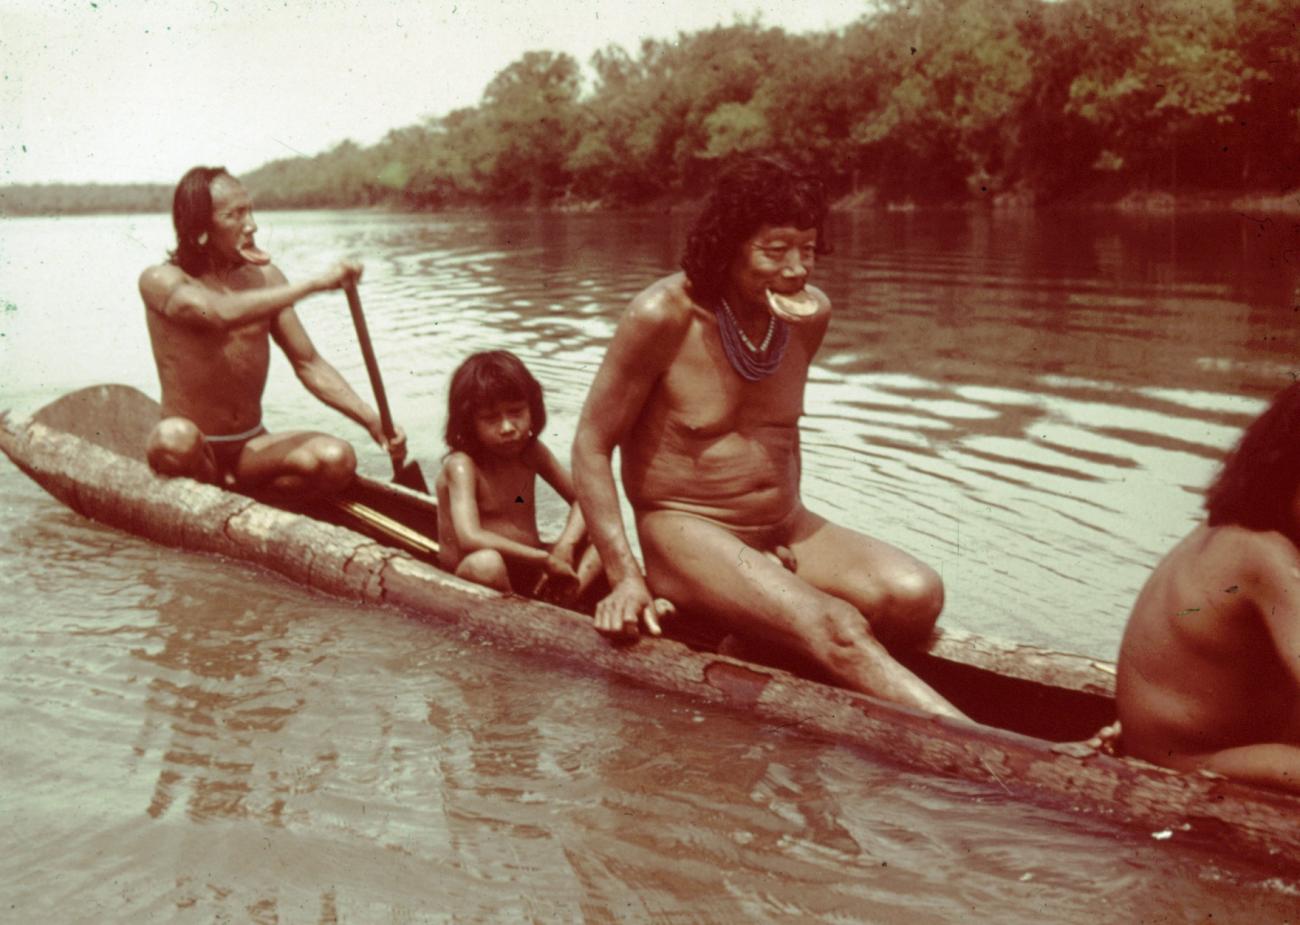 BD/66/209 - 
Indianen uit het amazonegebied
